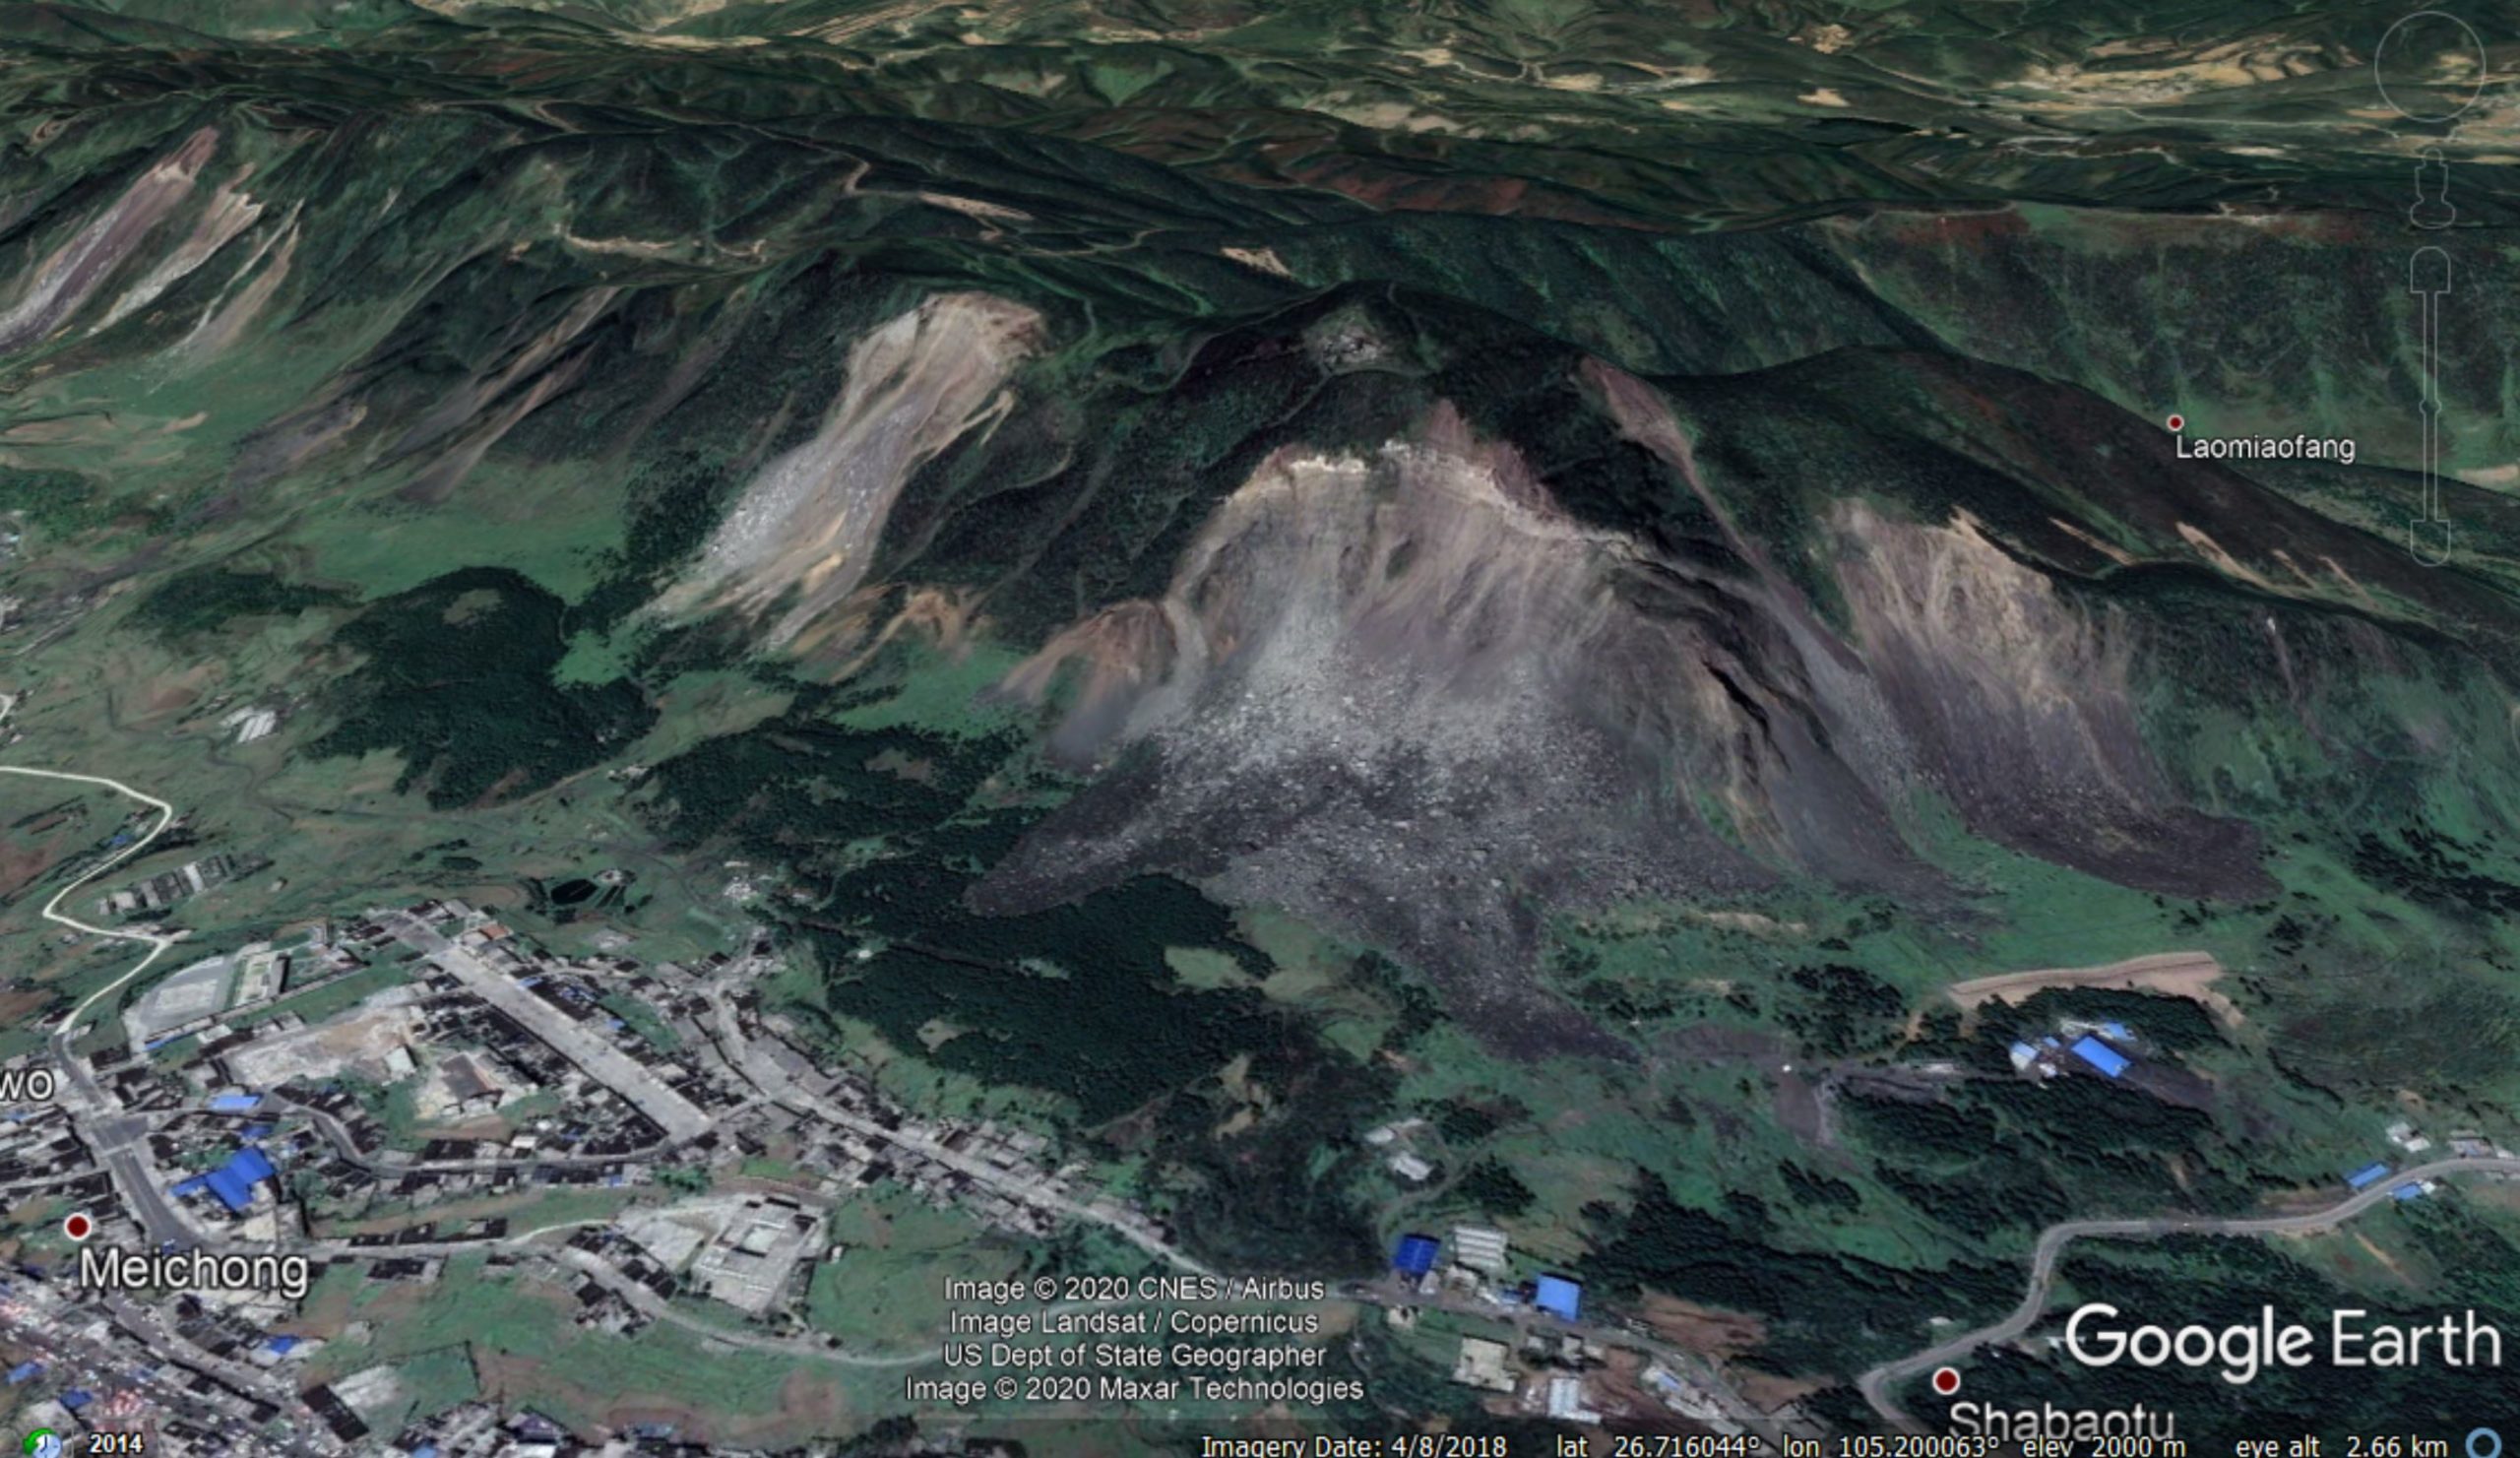 The Zongling landslides